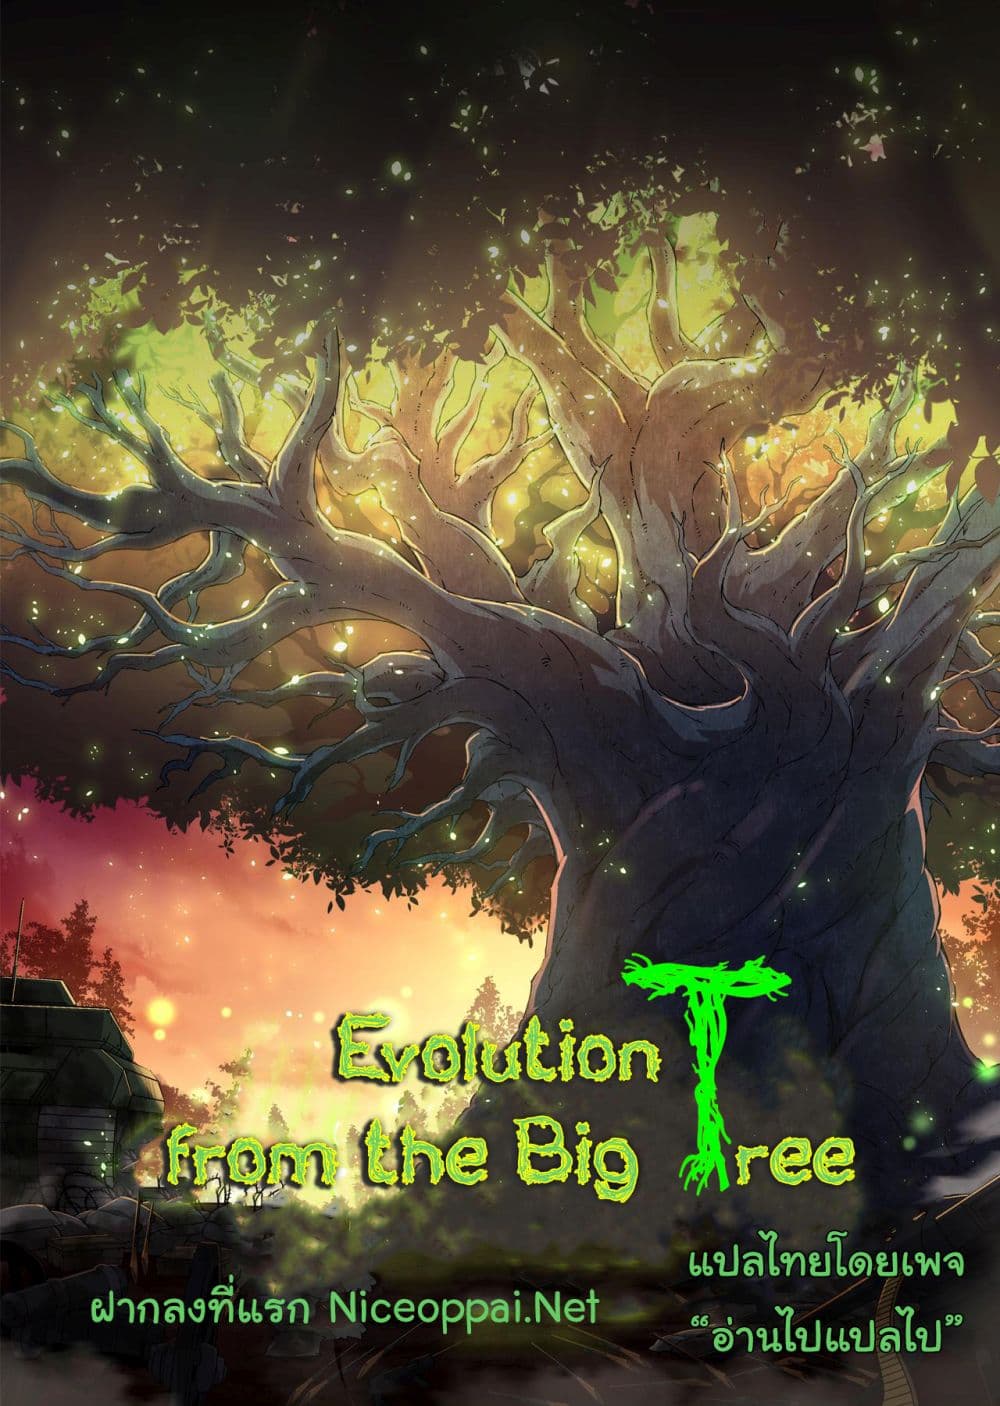 Evolution from the Big Tree Ã Â¸â€¢Ã Â¸Â­Ã Â¸â„¢Ã Â¸â€”Ã Â¸ÂµÃ Â¹Ë† 2 (1)